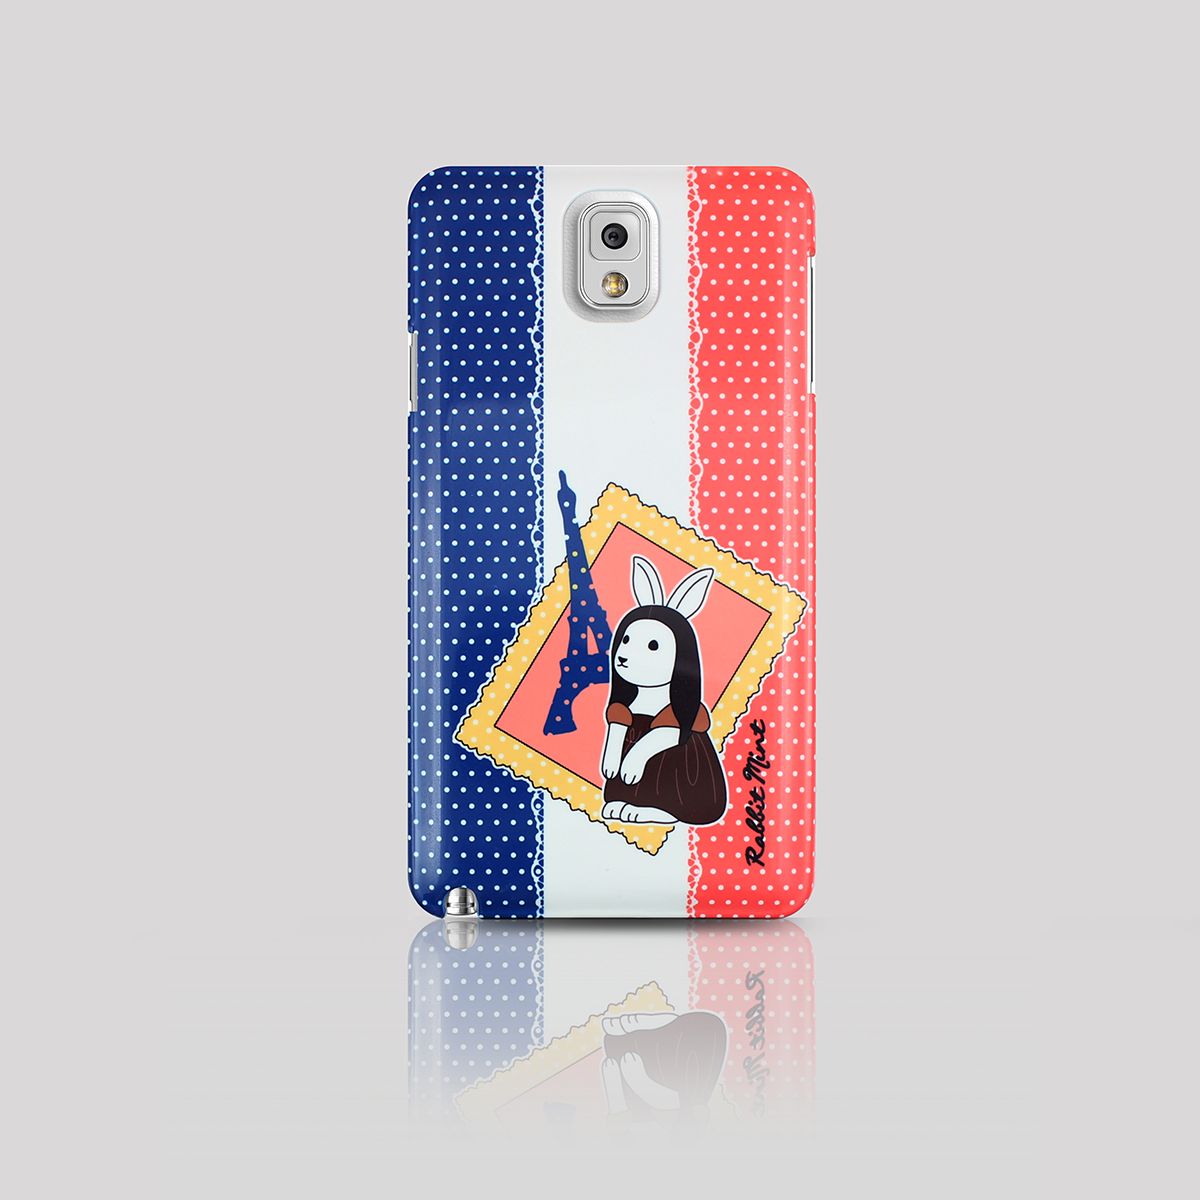 Samsung Galaxy Note 3 Case - Bonjour! De Louvre (p00055)